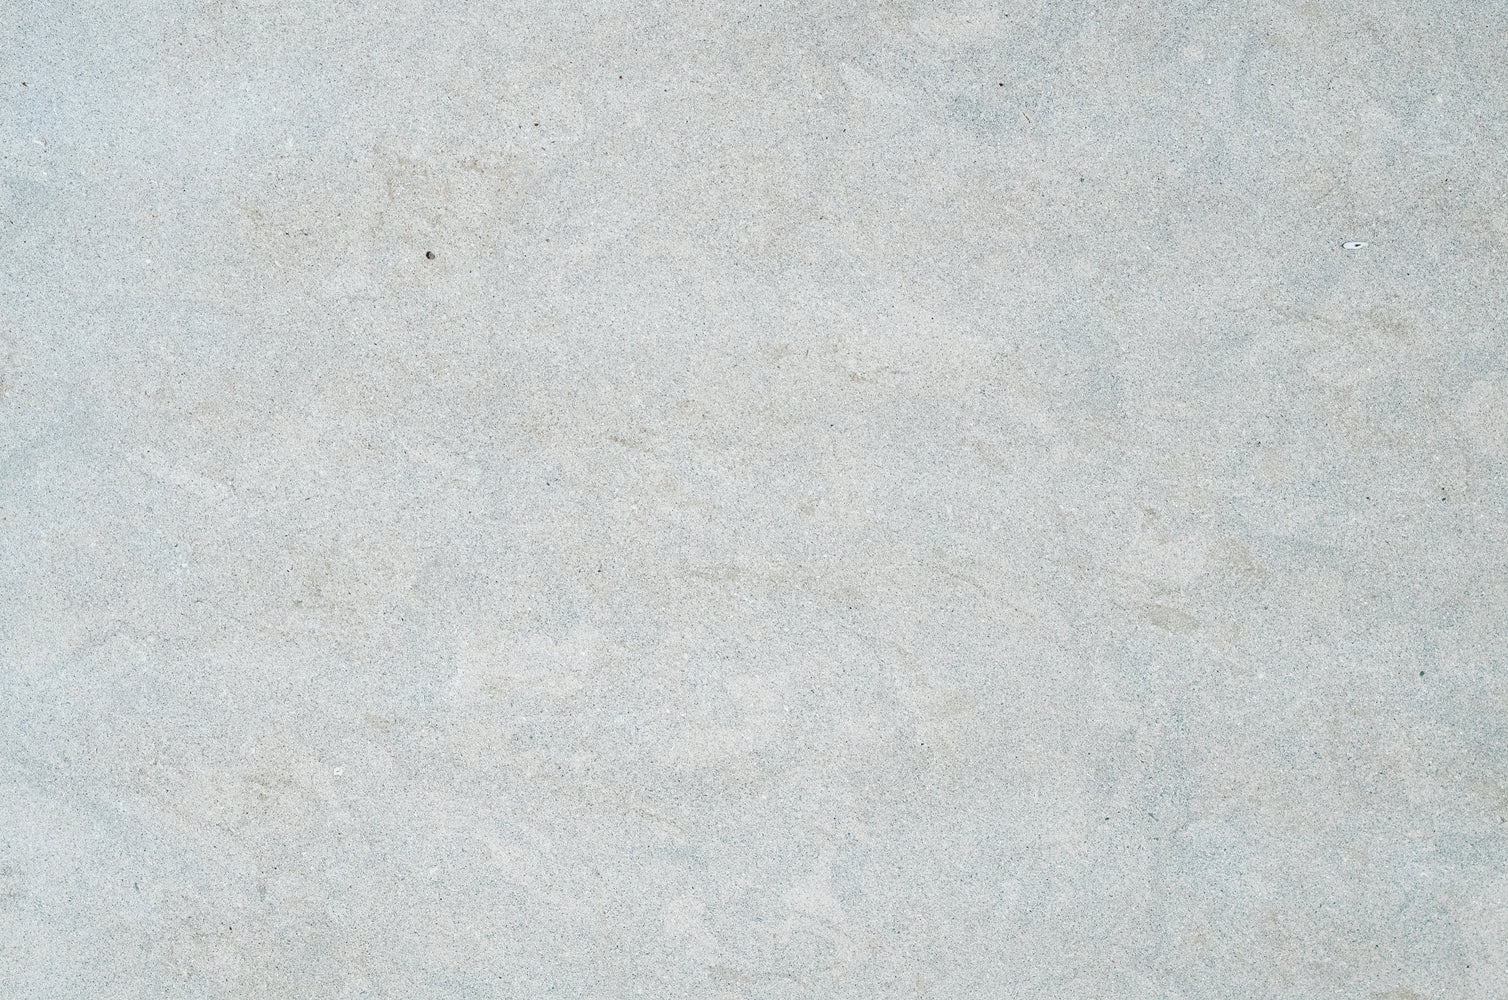 Full Tile Sample - Bateig Blue Sandstone Tile - 18" x 18" x 5/8" Honed